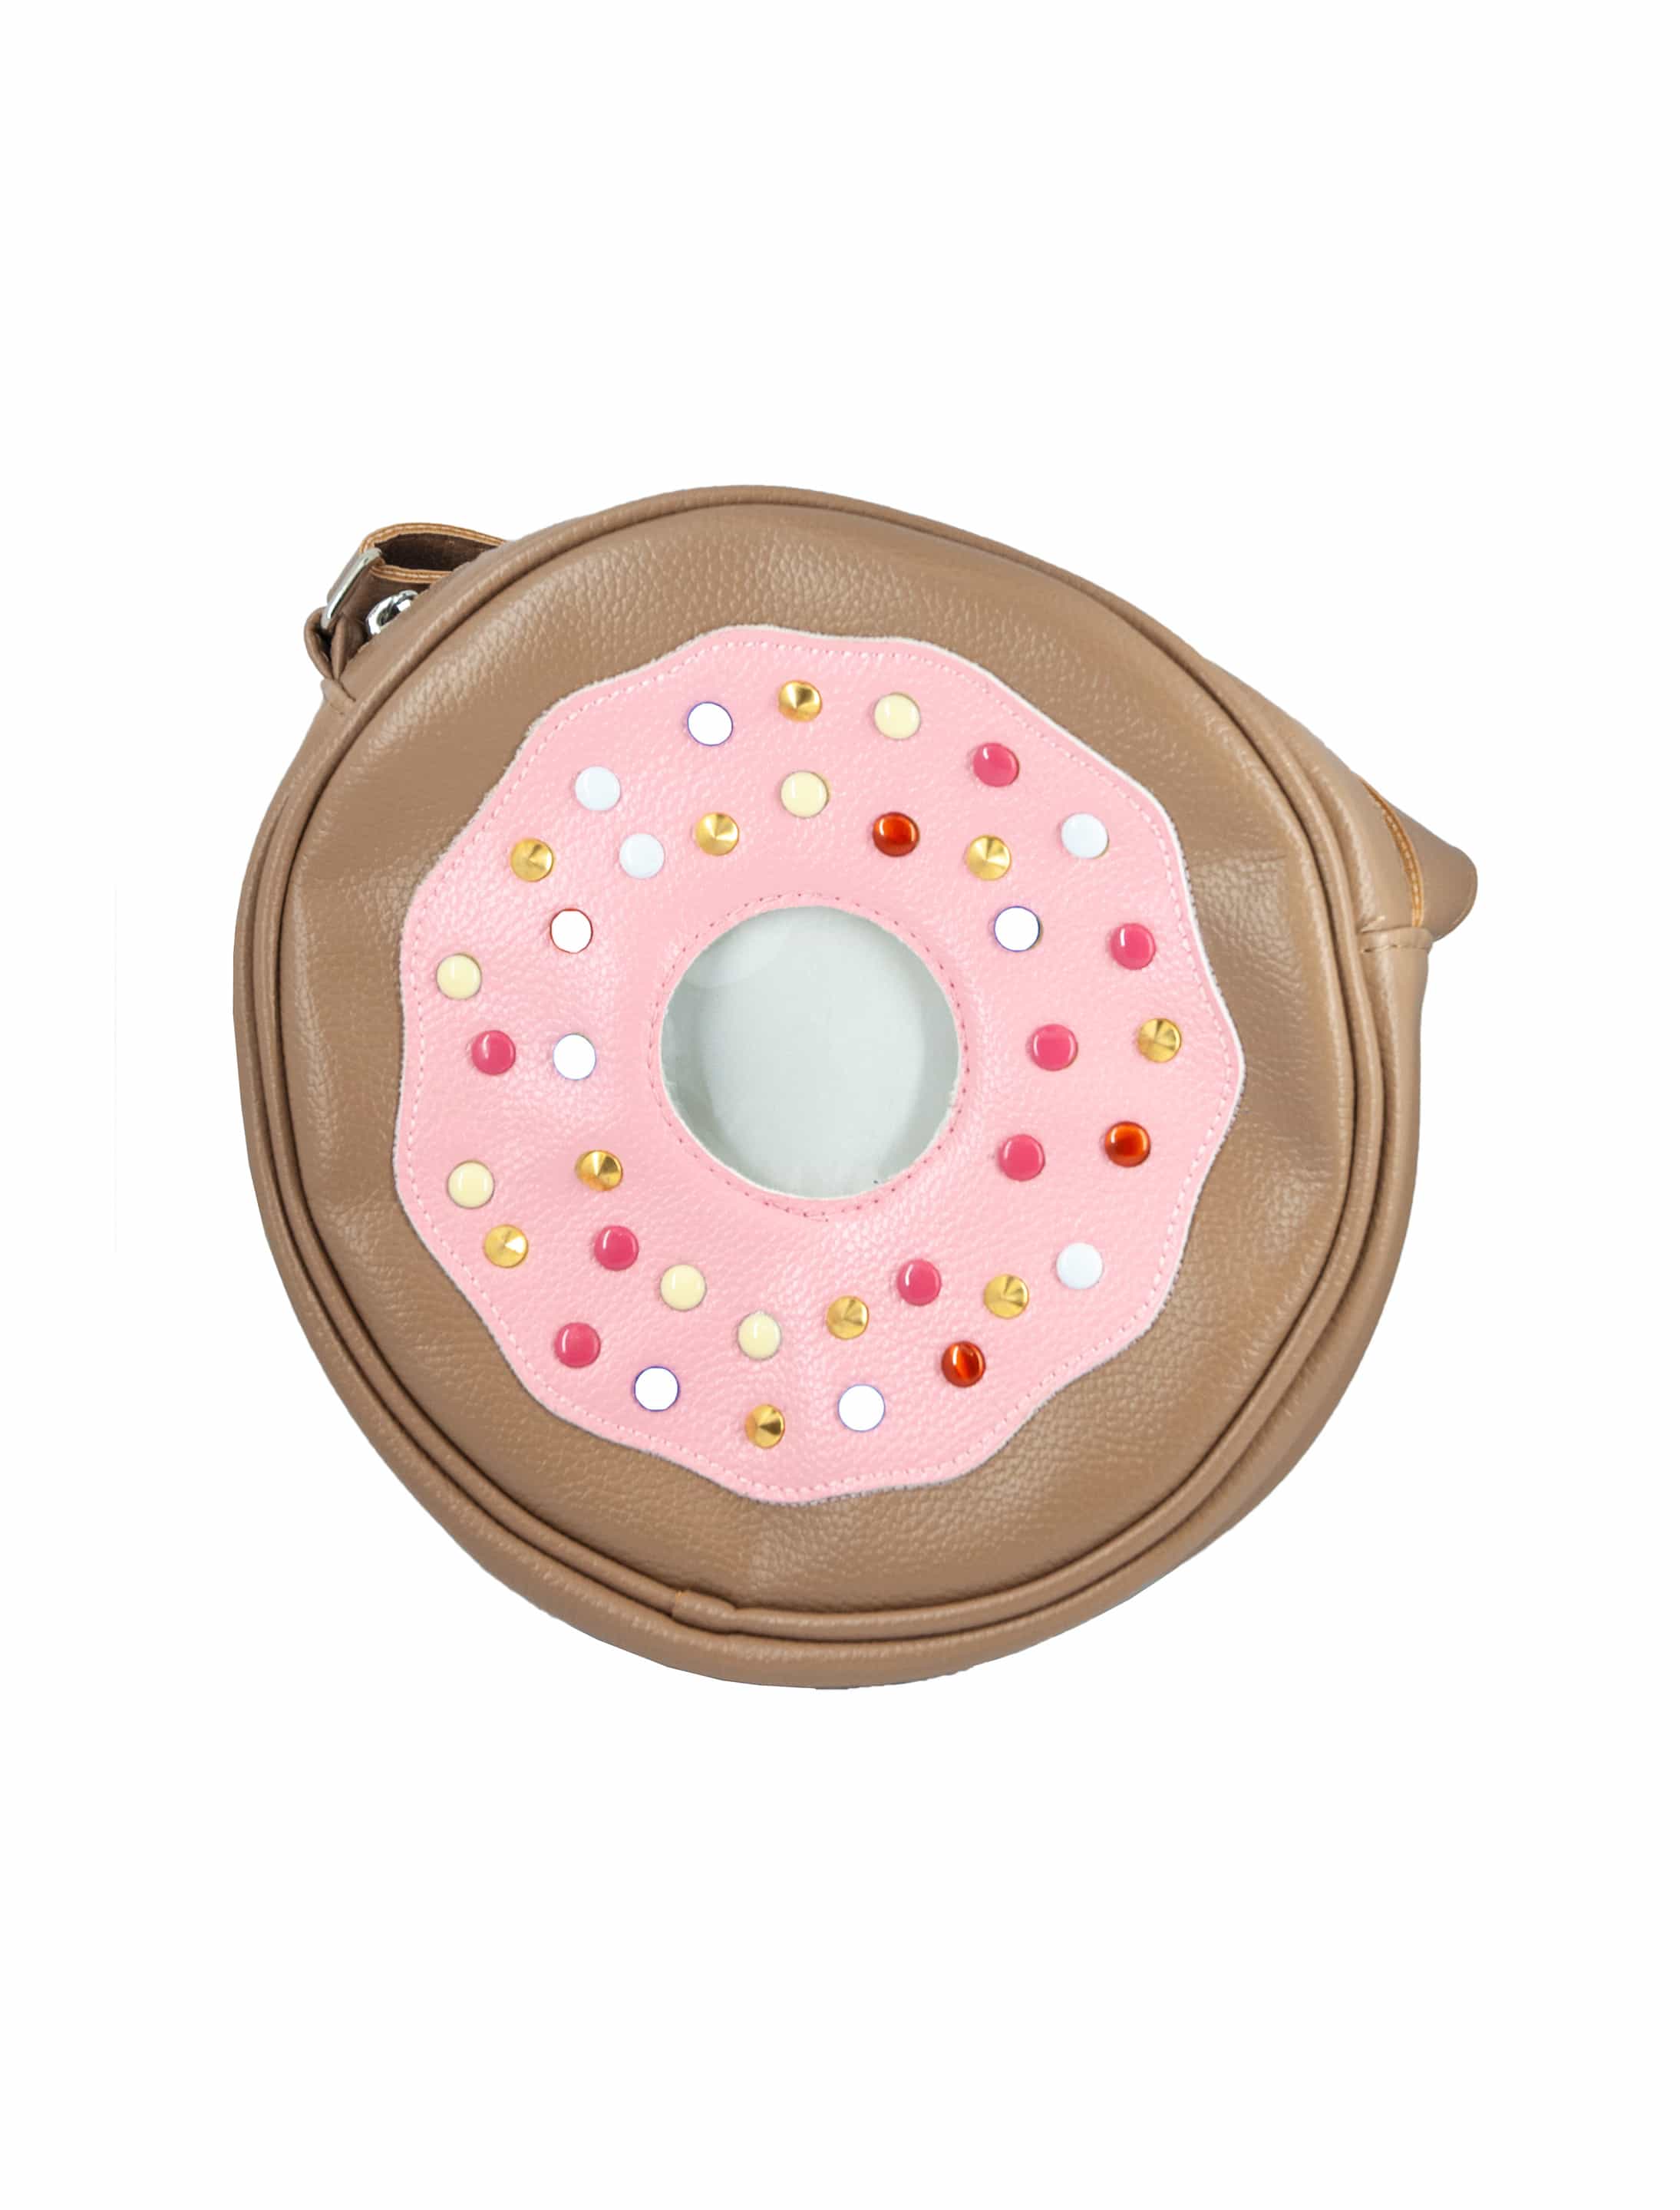 Tasche Candy Donut rosa/braun